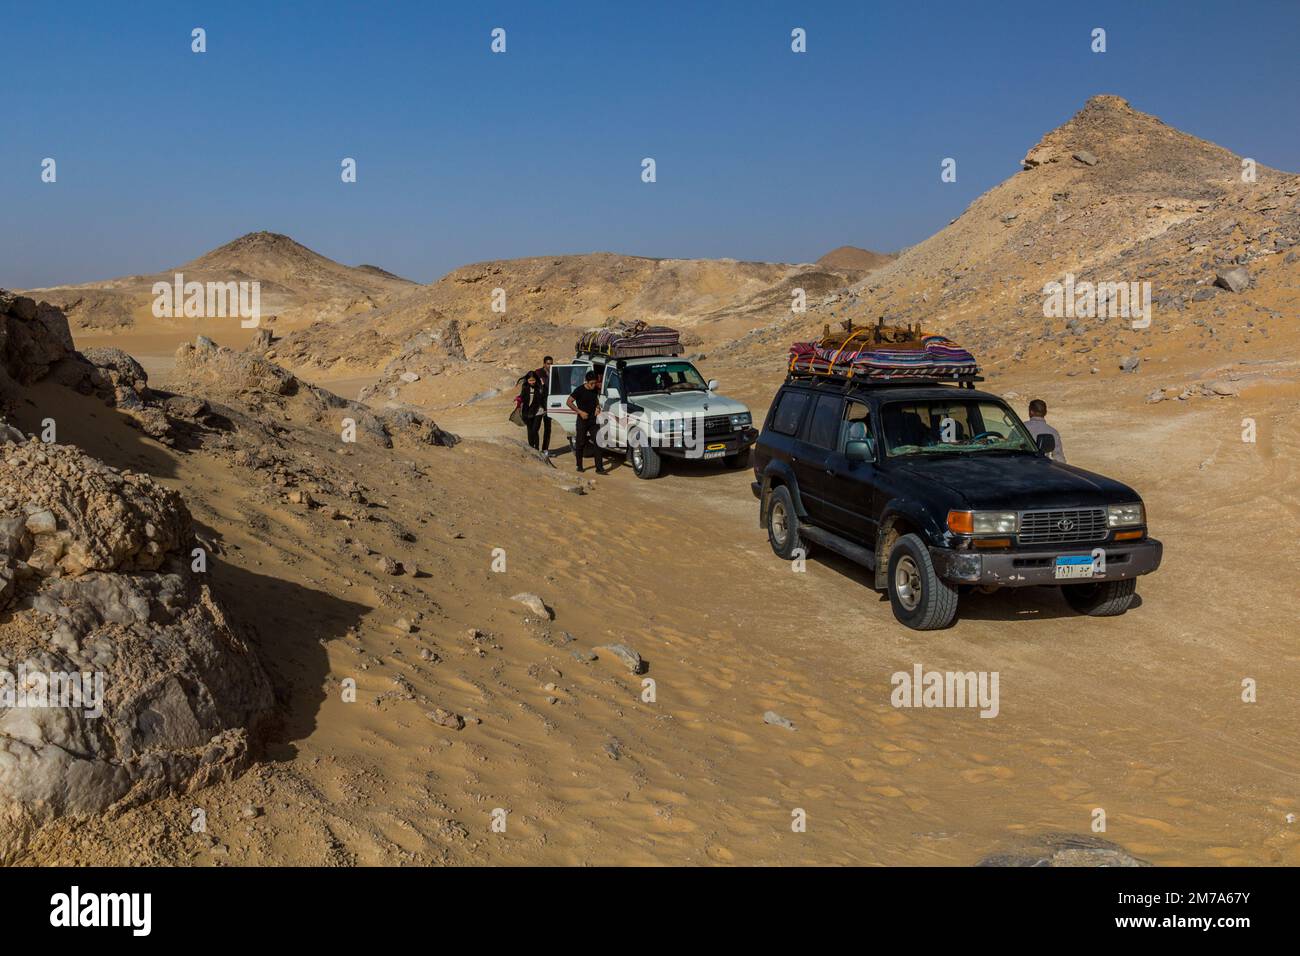 DÉSERT OCCIDENTAL, ÉGYPTE - 6 FÉVRIER 2019 : 4WD véhicules à la montagne Crystal dans le désert occidental, Égypte Banque D'Images